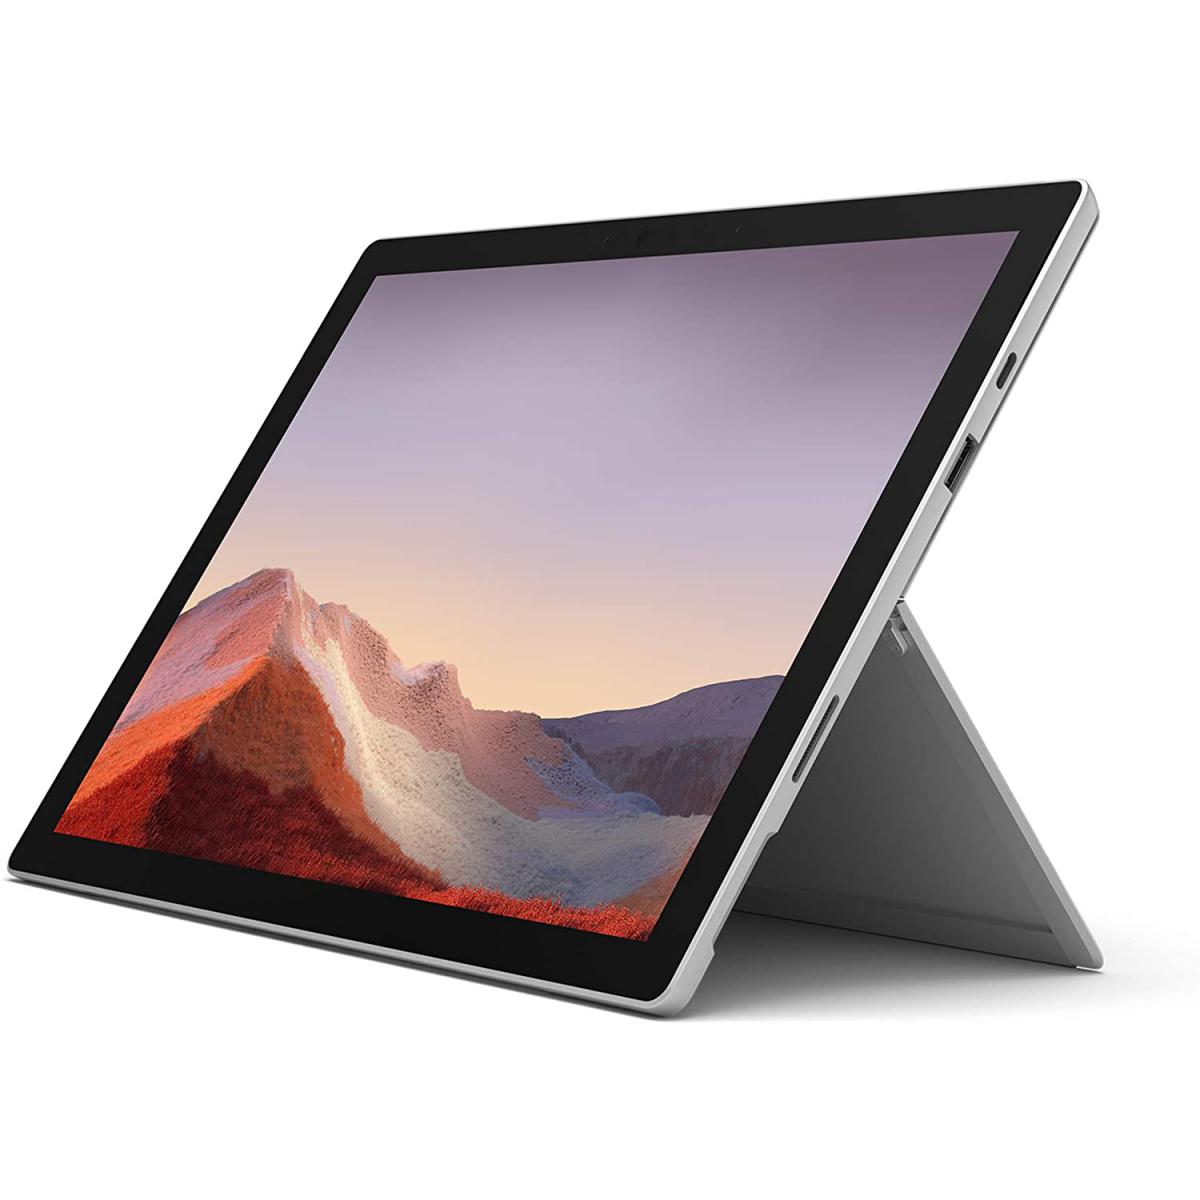 Tablette Windows Microsoft Microsoft Surface Pro 7 Tablette 2 en 1 12,3 Pouces Tablette 16GB RAM + 1TB SSD Gris Platine